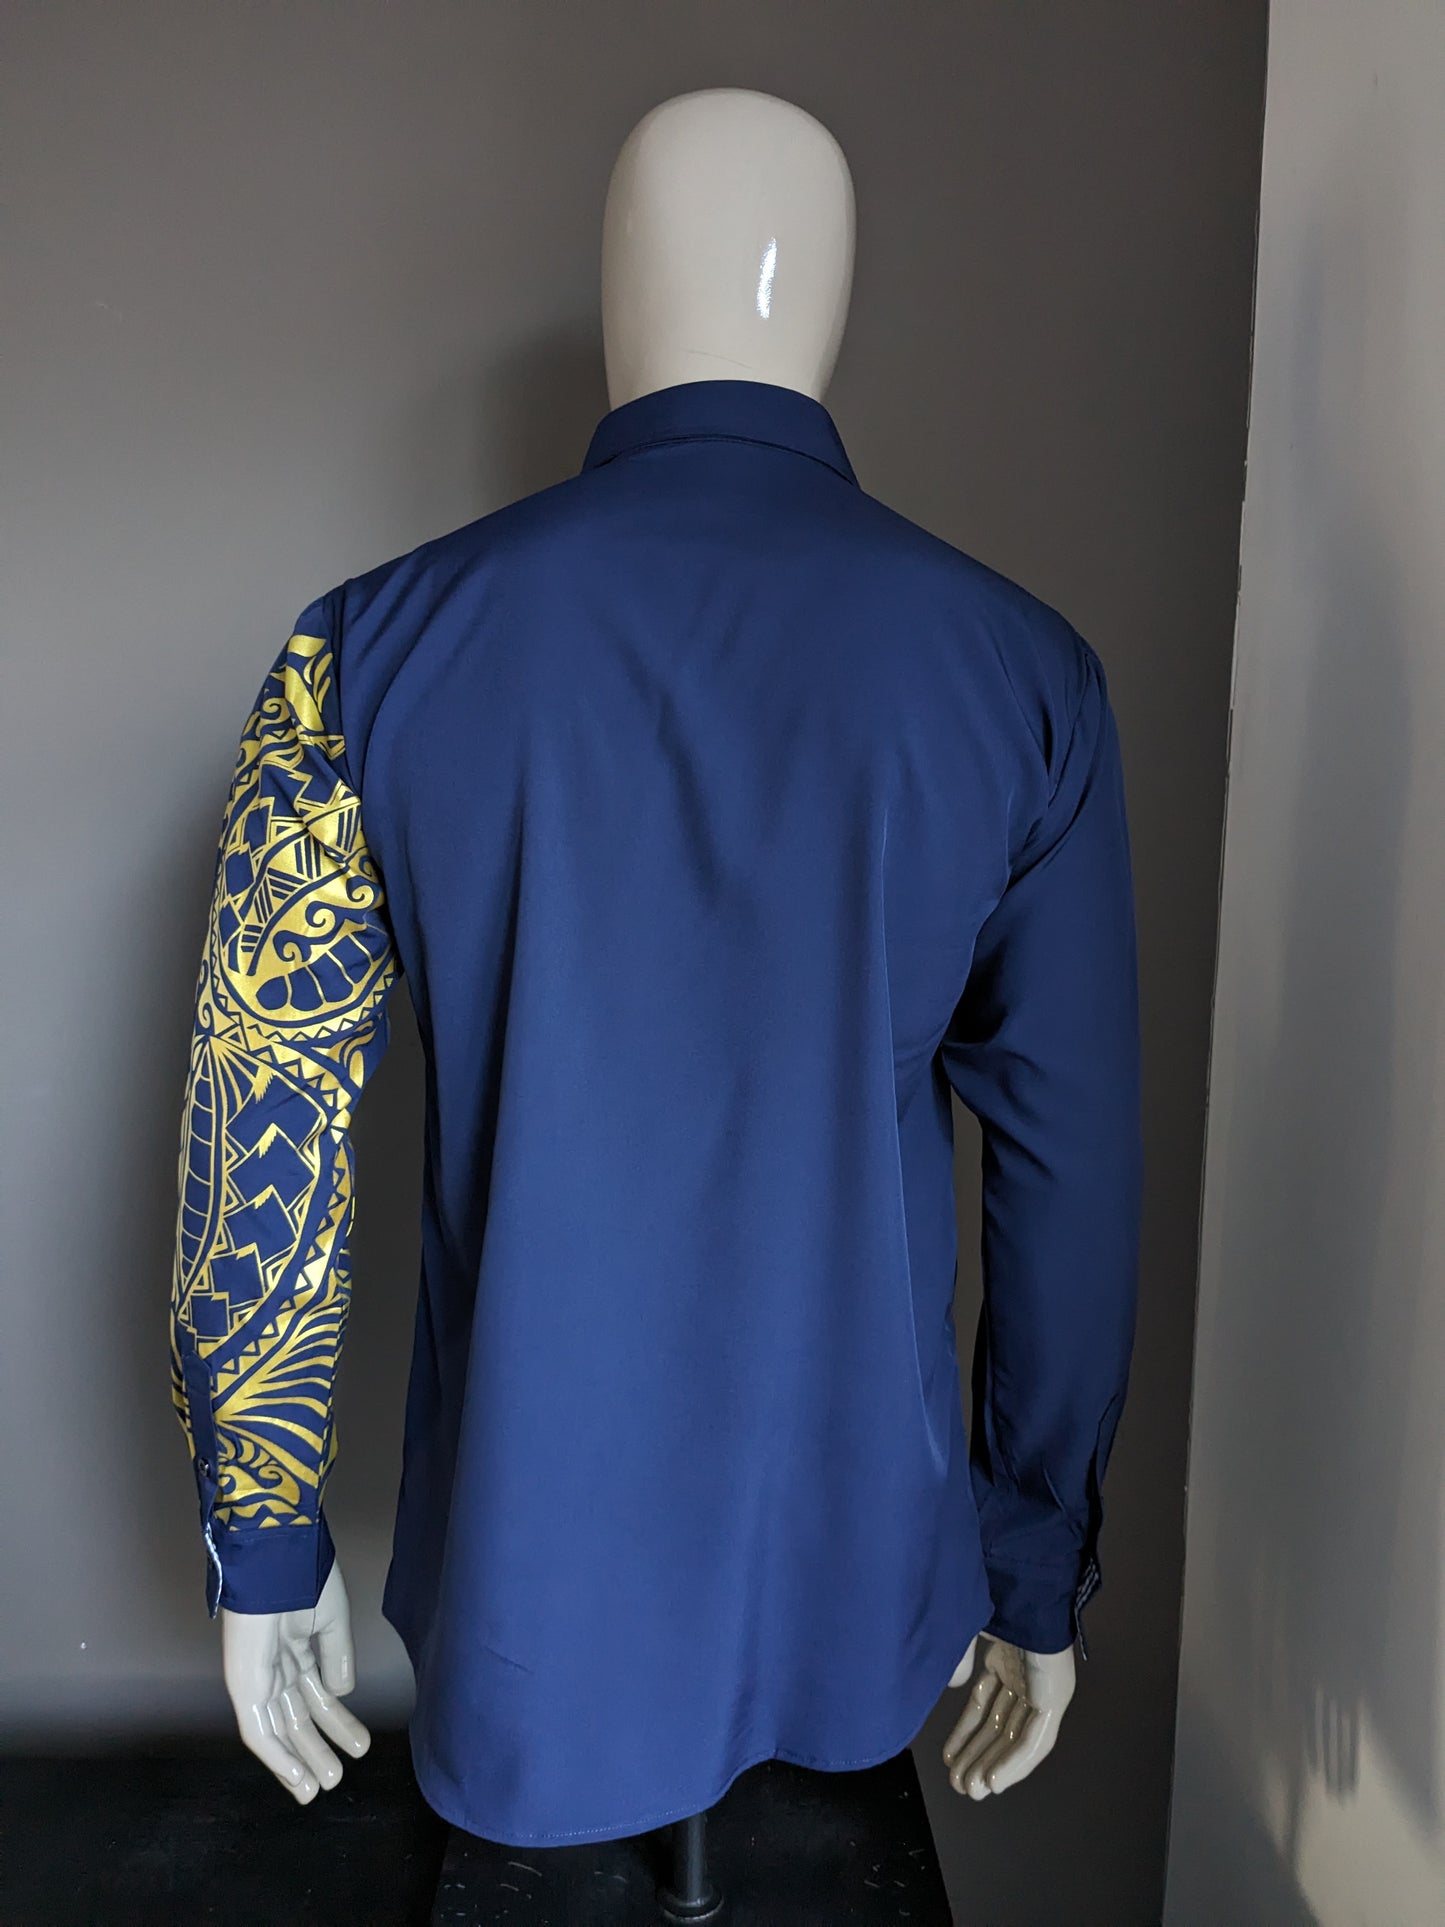 Camisa vintage separada sin marca. Azul oscuro con estampado de oro en la manga. Talla L.